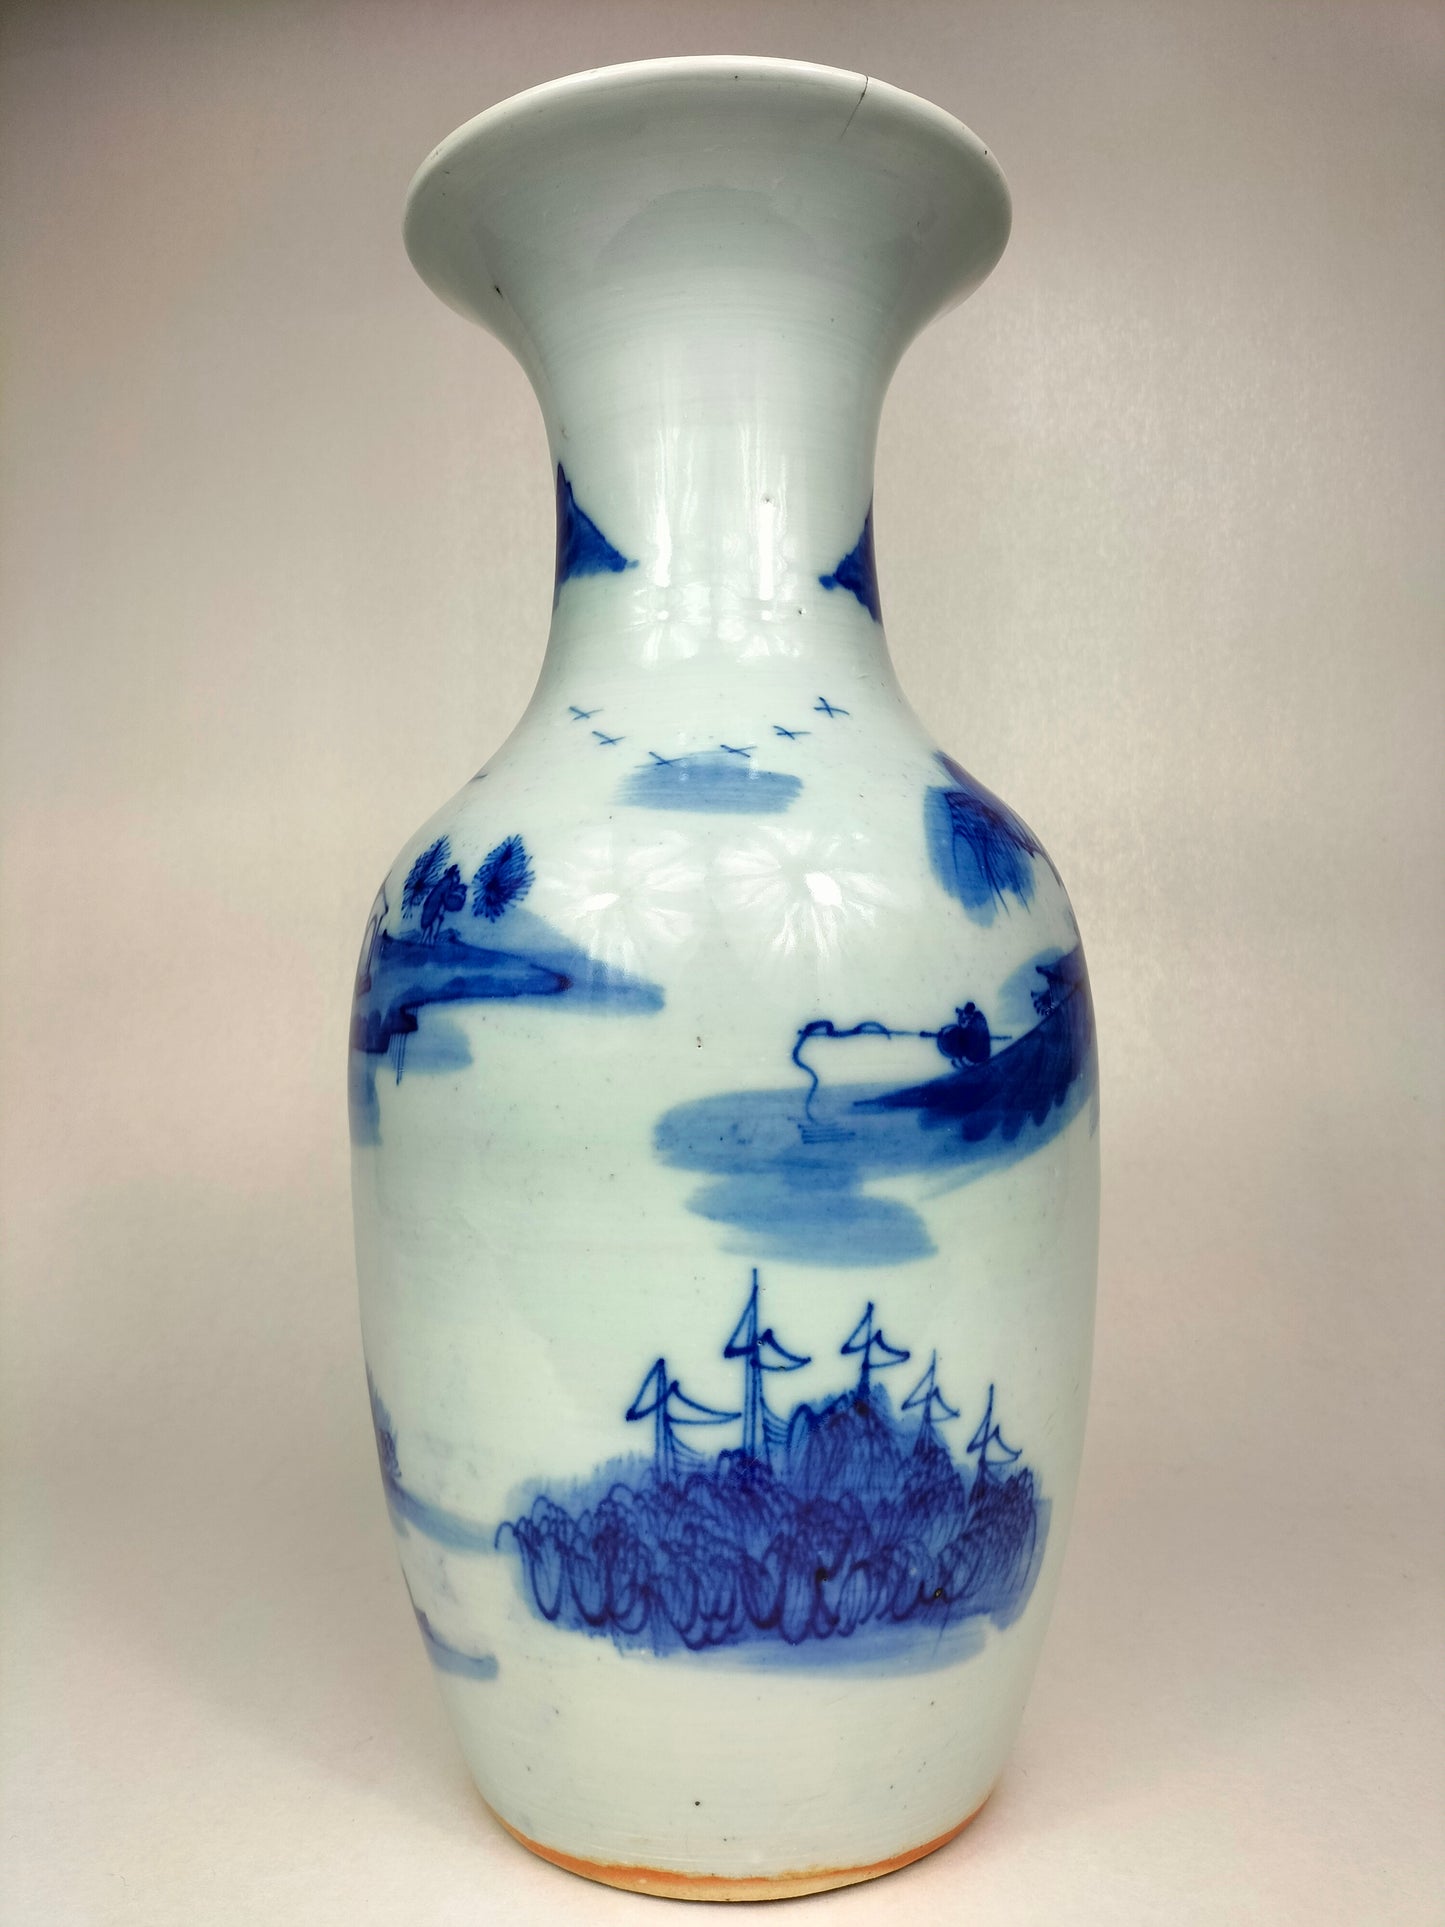 مزهرية صينية أثرية مزينة بمنظر طبيعي // أزرق وأبيض – أسرة تشينغ – القرن التاسع عشر